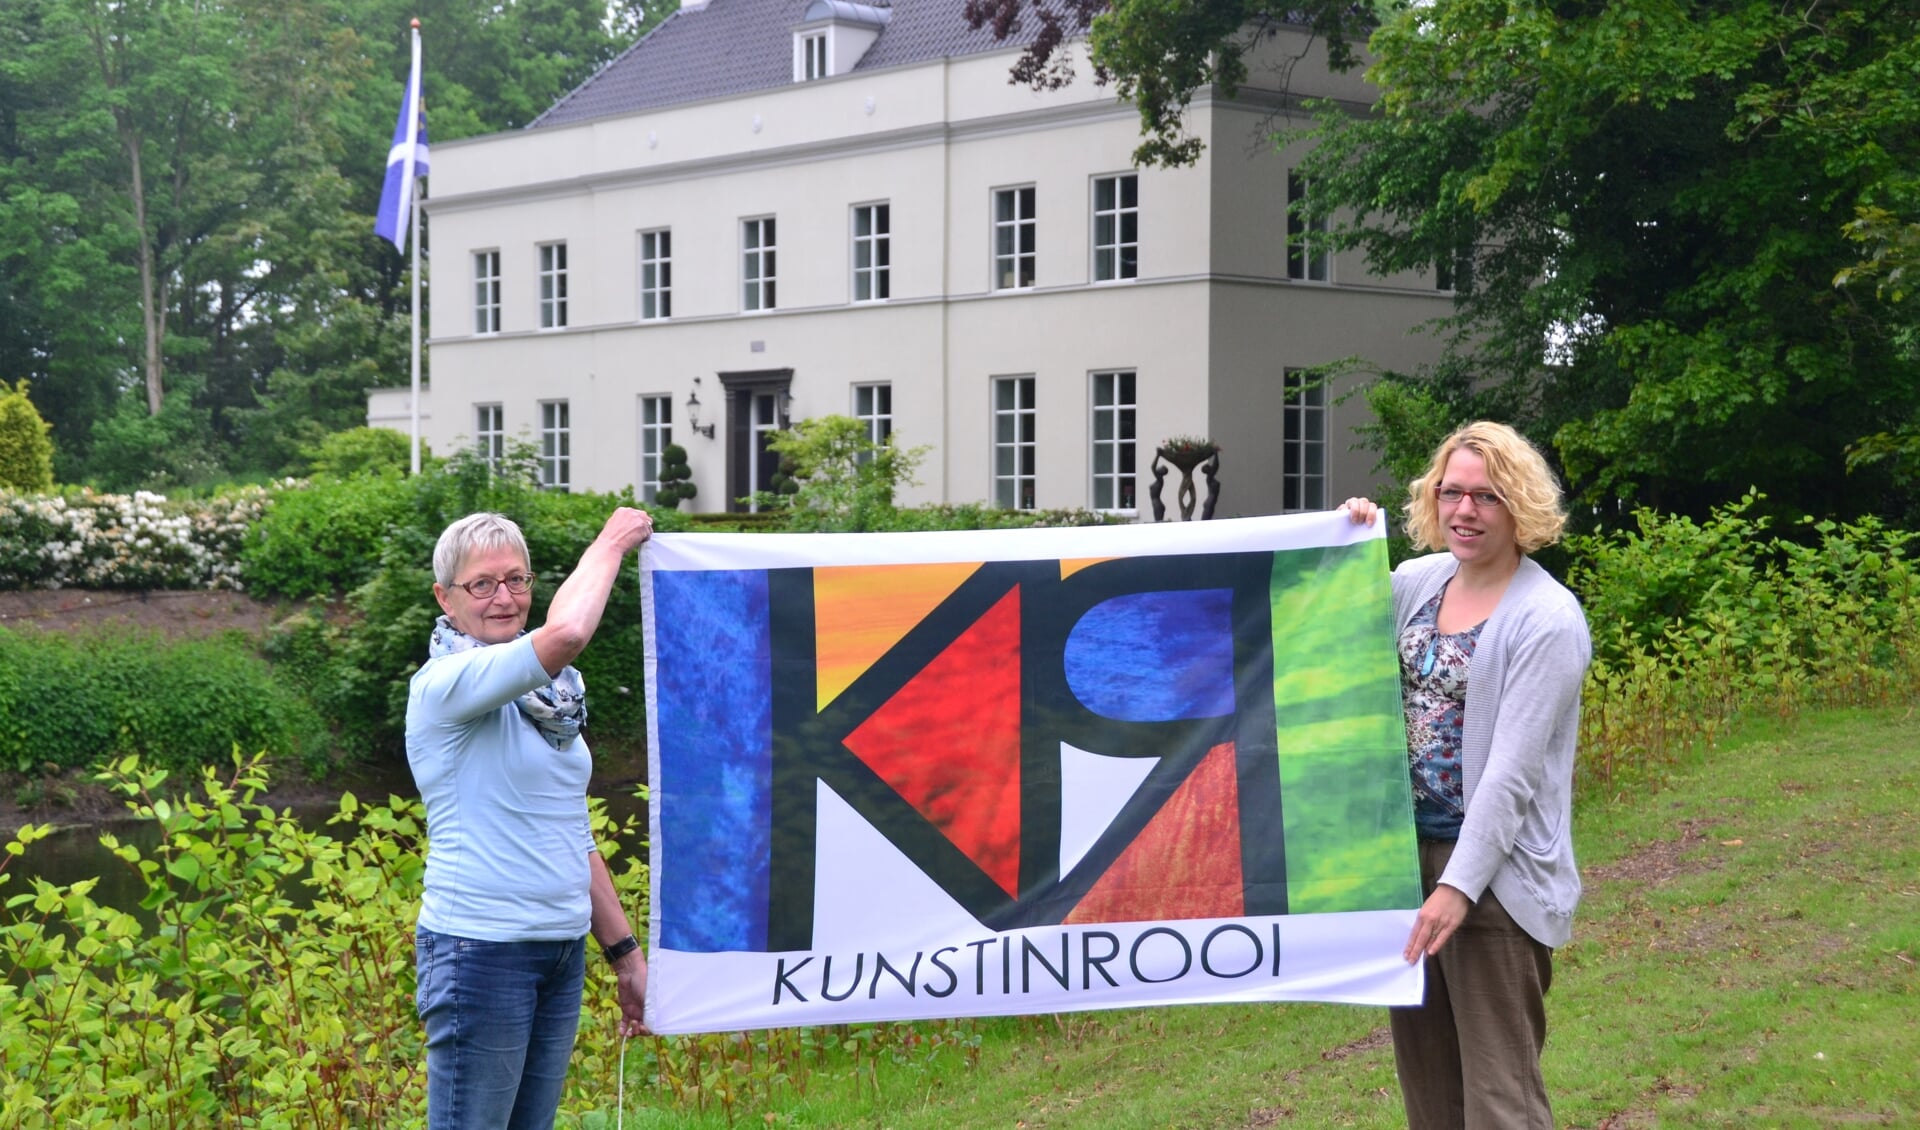 Lia Bekkers en Petra Thoen (r) presenteren de vlag van KUNSTINROOI voor 'De Kolk', één van de deelnemende locaties op 30 en 31 mei